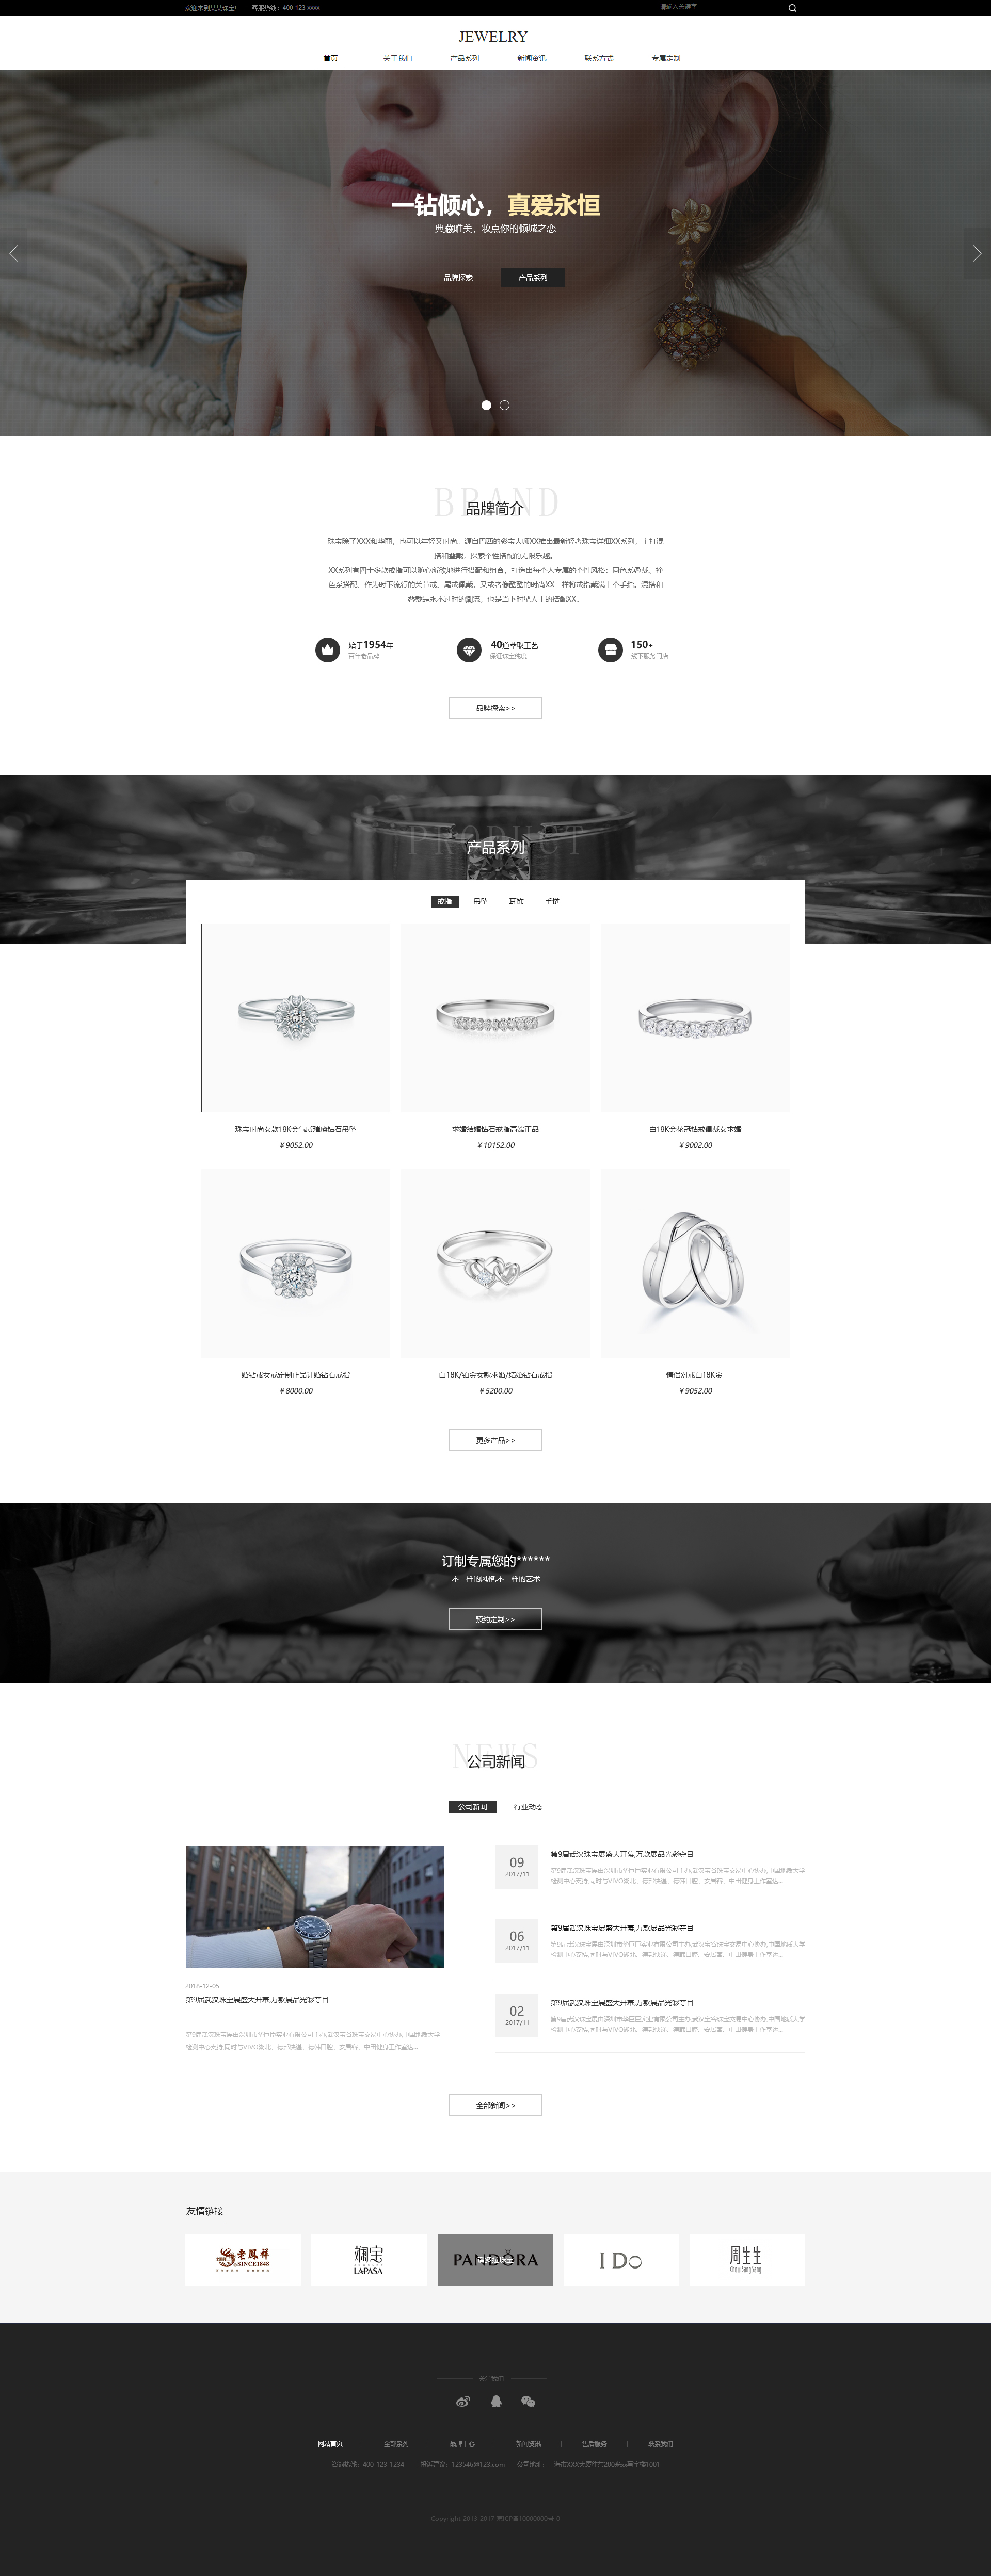 企业网站精美模板-jewelry-1231001